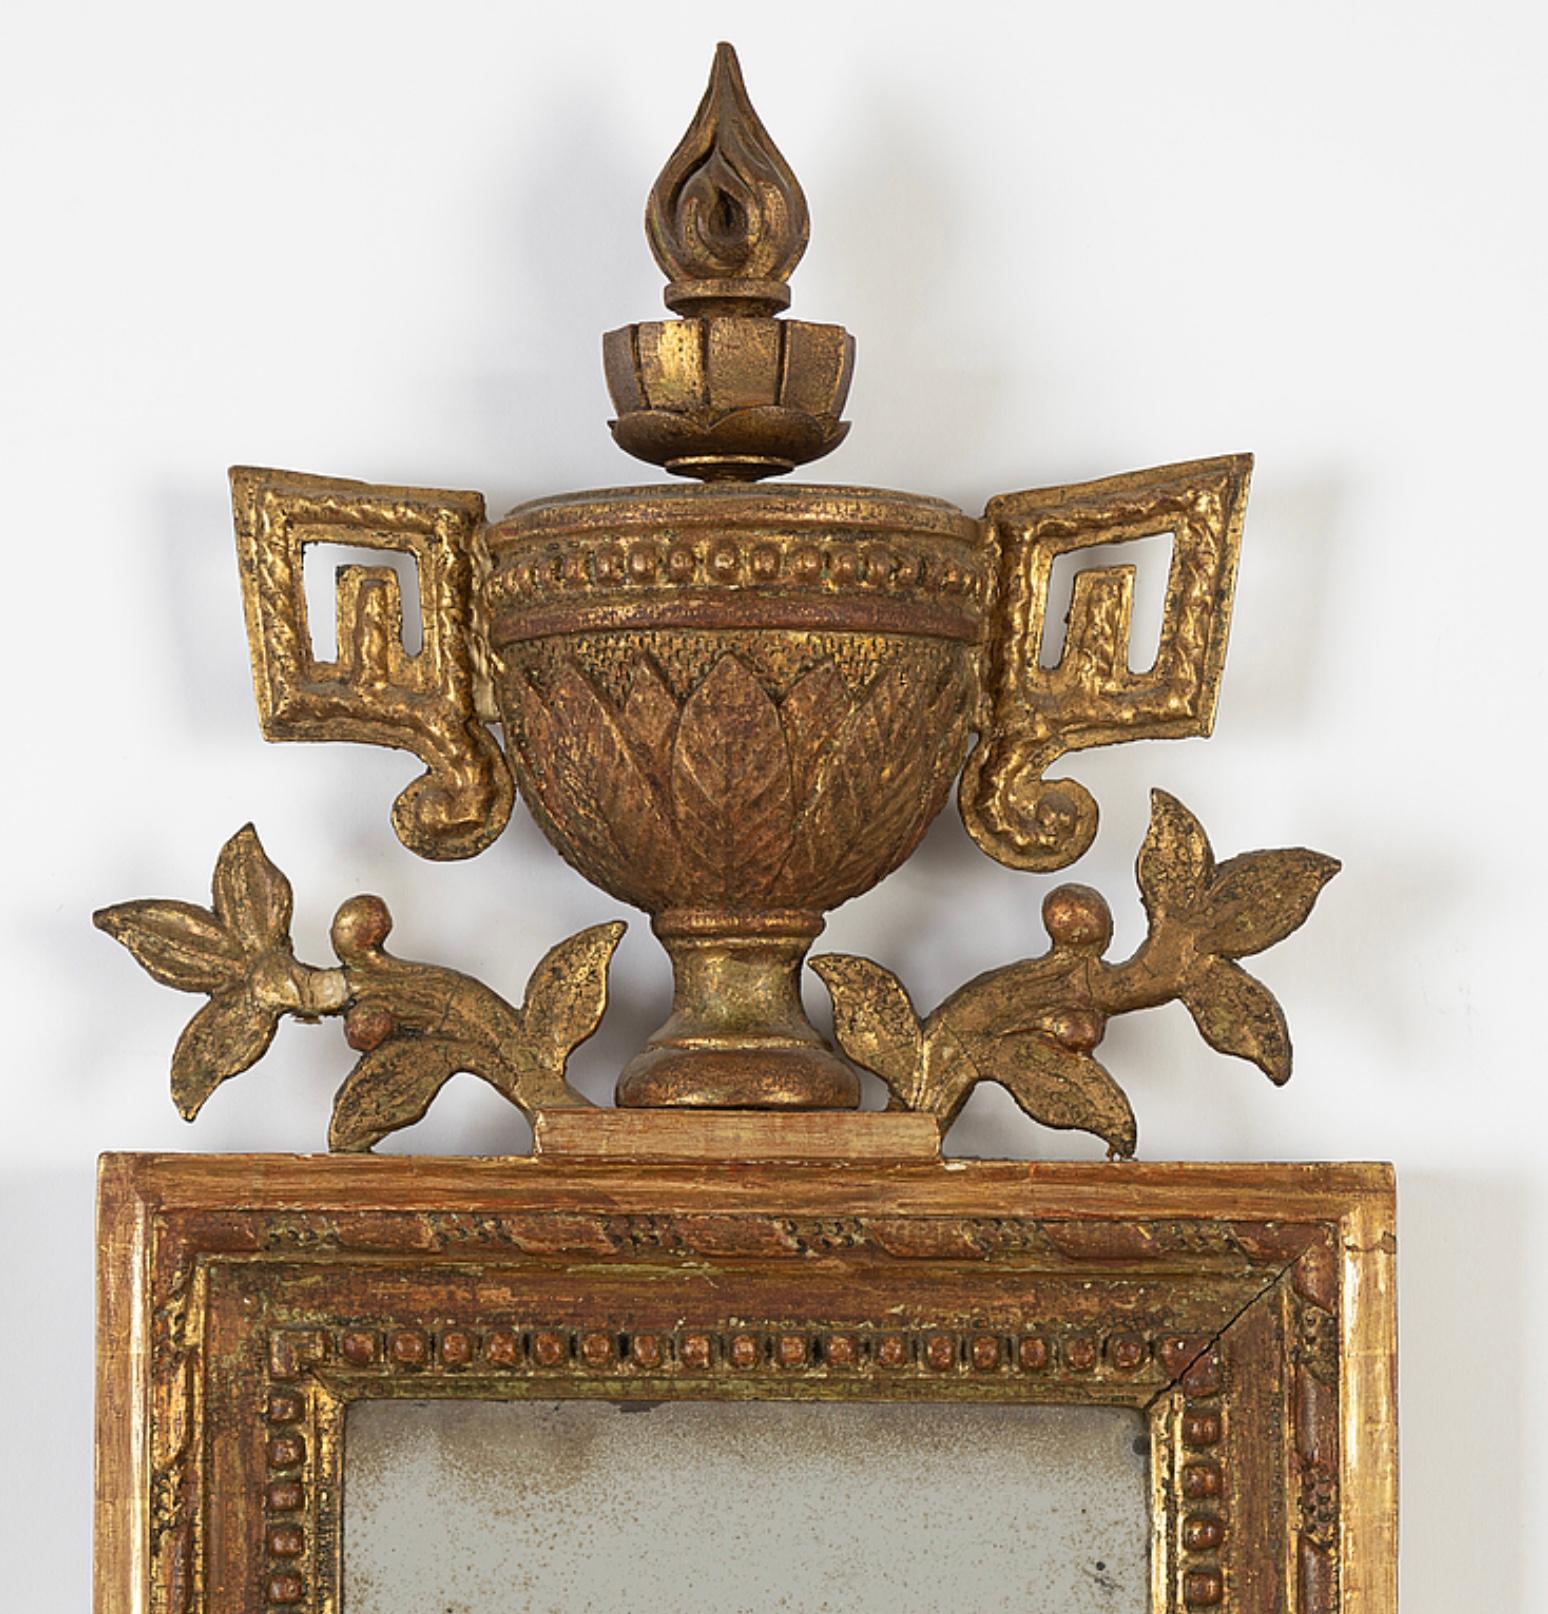 Fin du CIRCA 18ème miroir suédois doré avec des détails classiques d'urnes, de feuilles et de guirlandes.
Le verre  a été remplacée au fil des ans. 